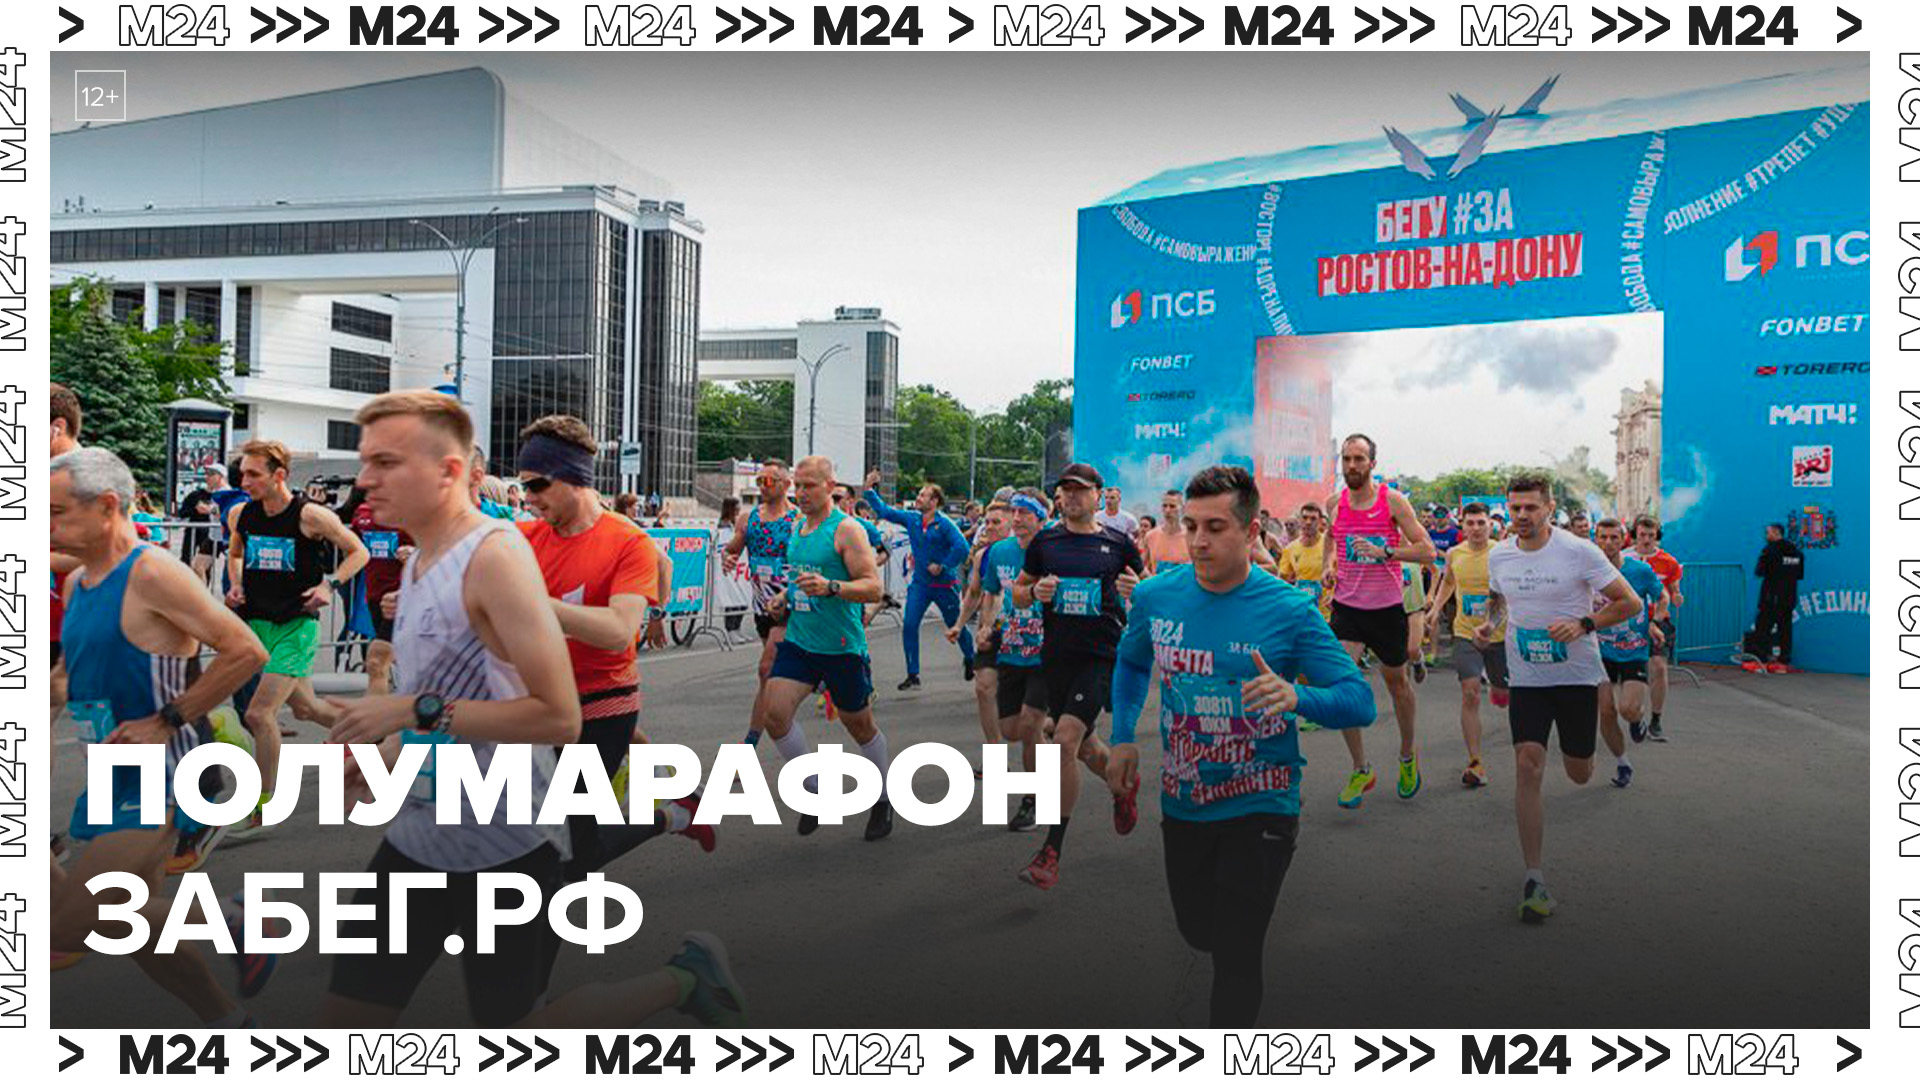 Полумарафон "ЗаБег.РФ" стал самым большим мероприятием по количеству участников - Москва 24